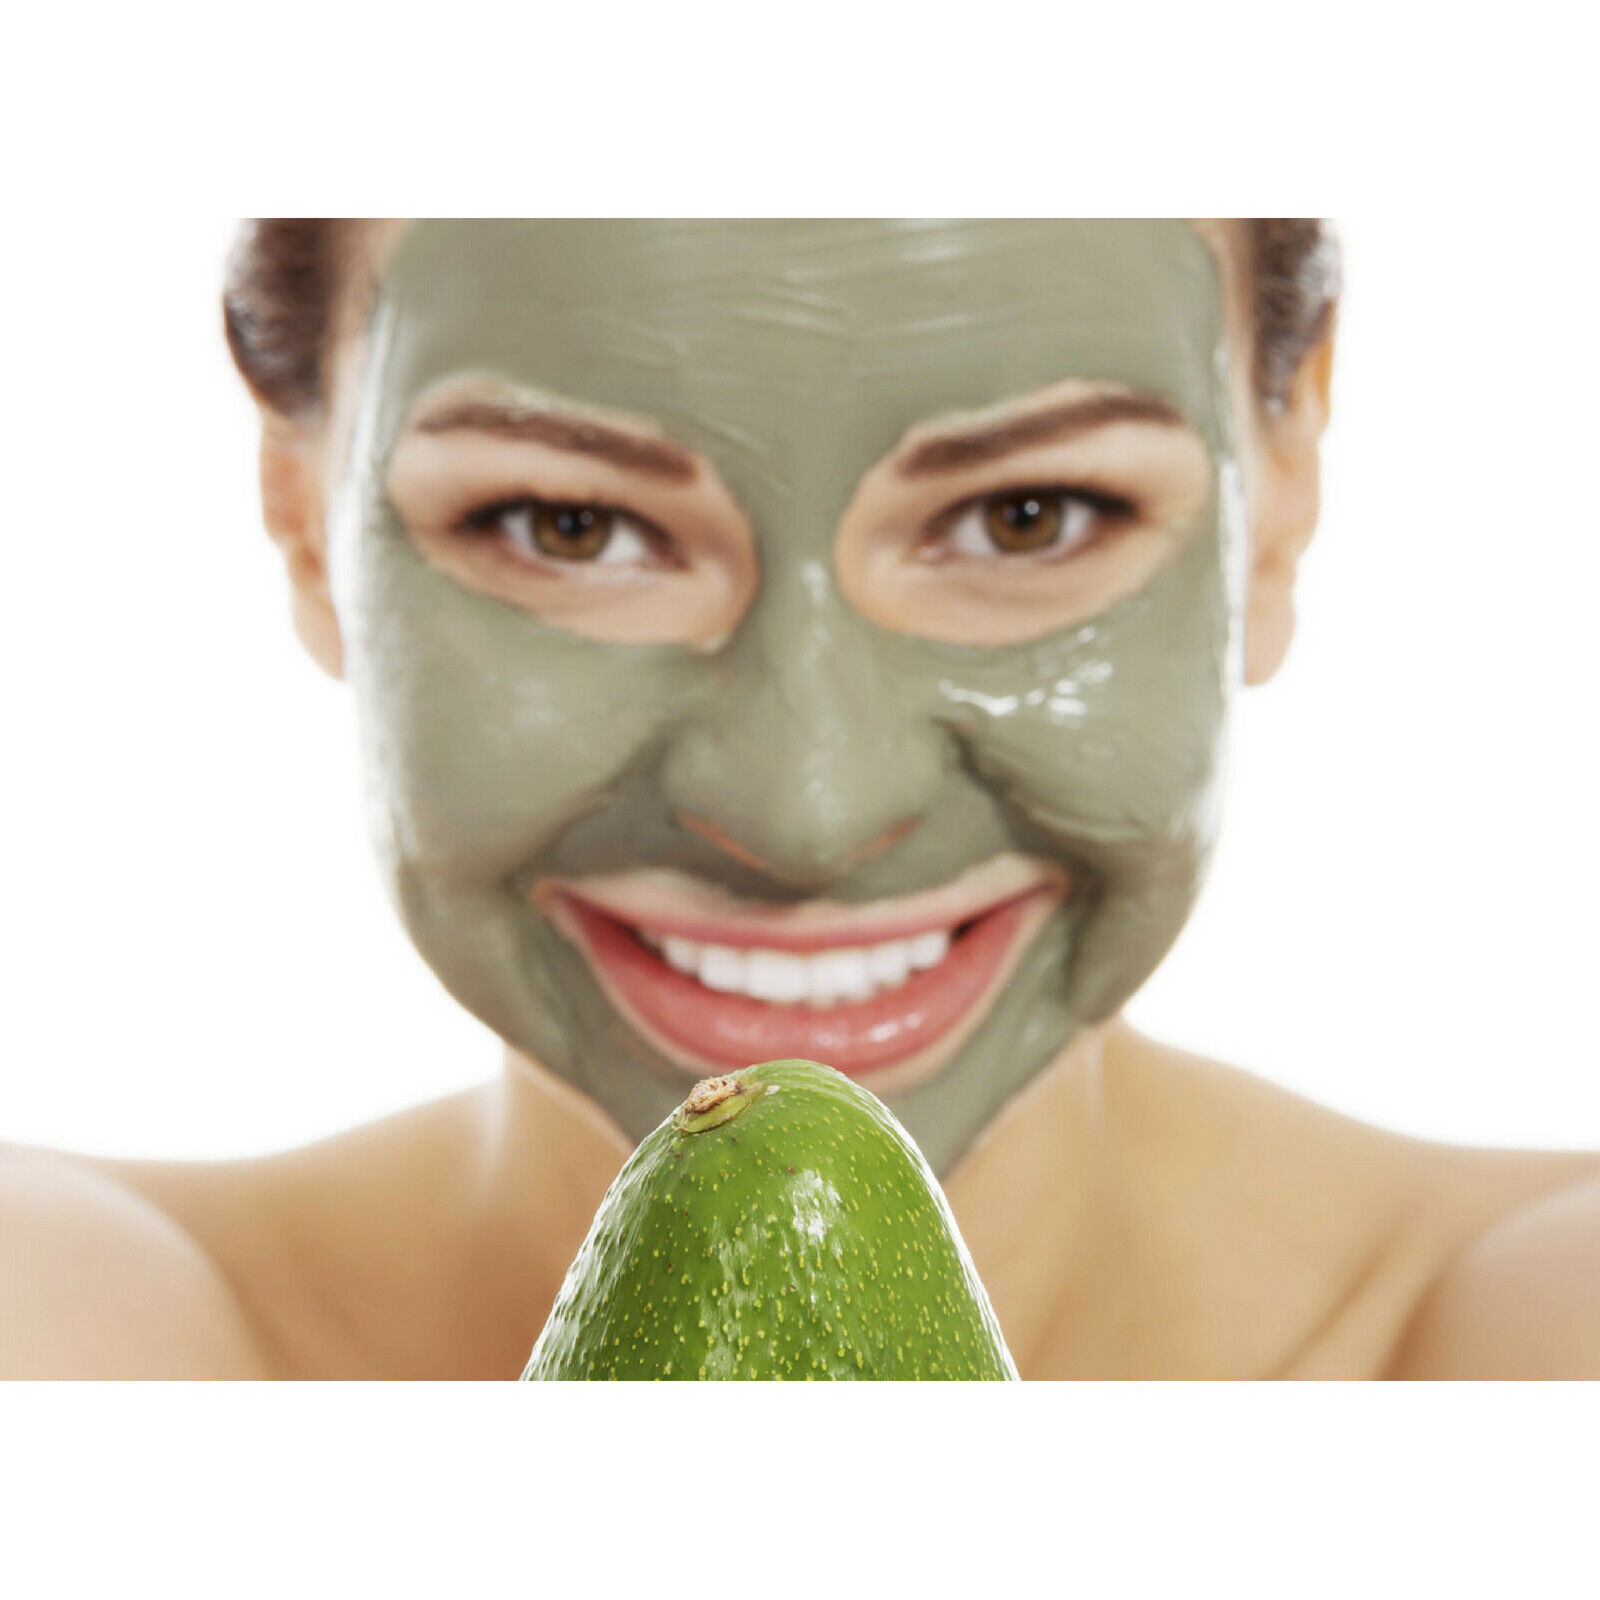 Фруктовые маски для лица. Маска для лица. Женщина в косметической маске. Девушка с маской на лице. Маска для лица/зеленая.